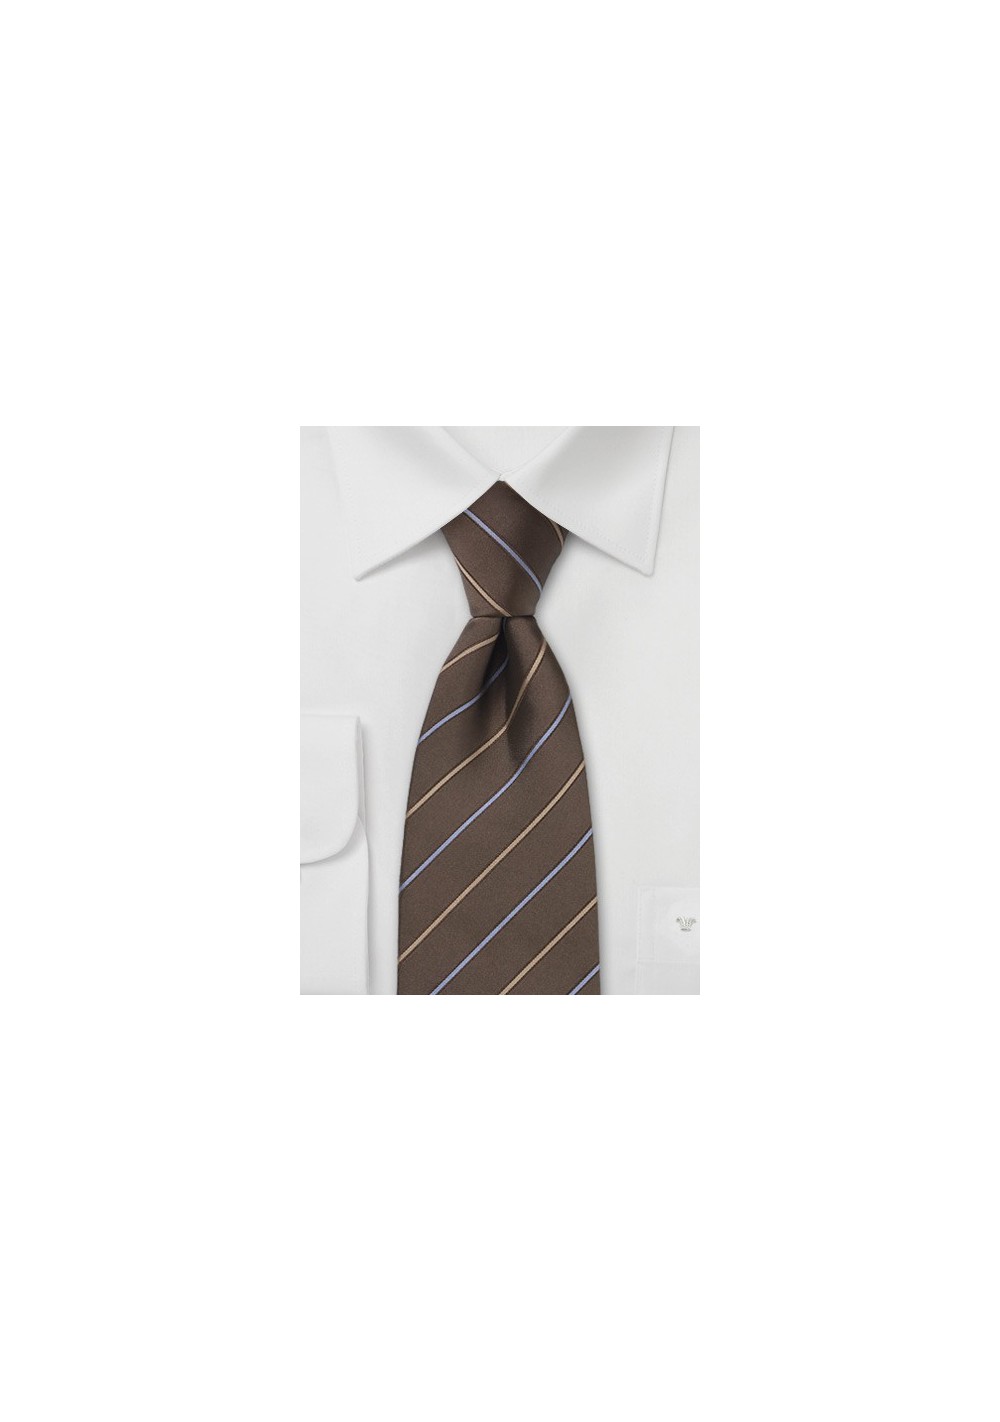 Brown Striped Silk Necktie